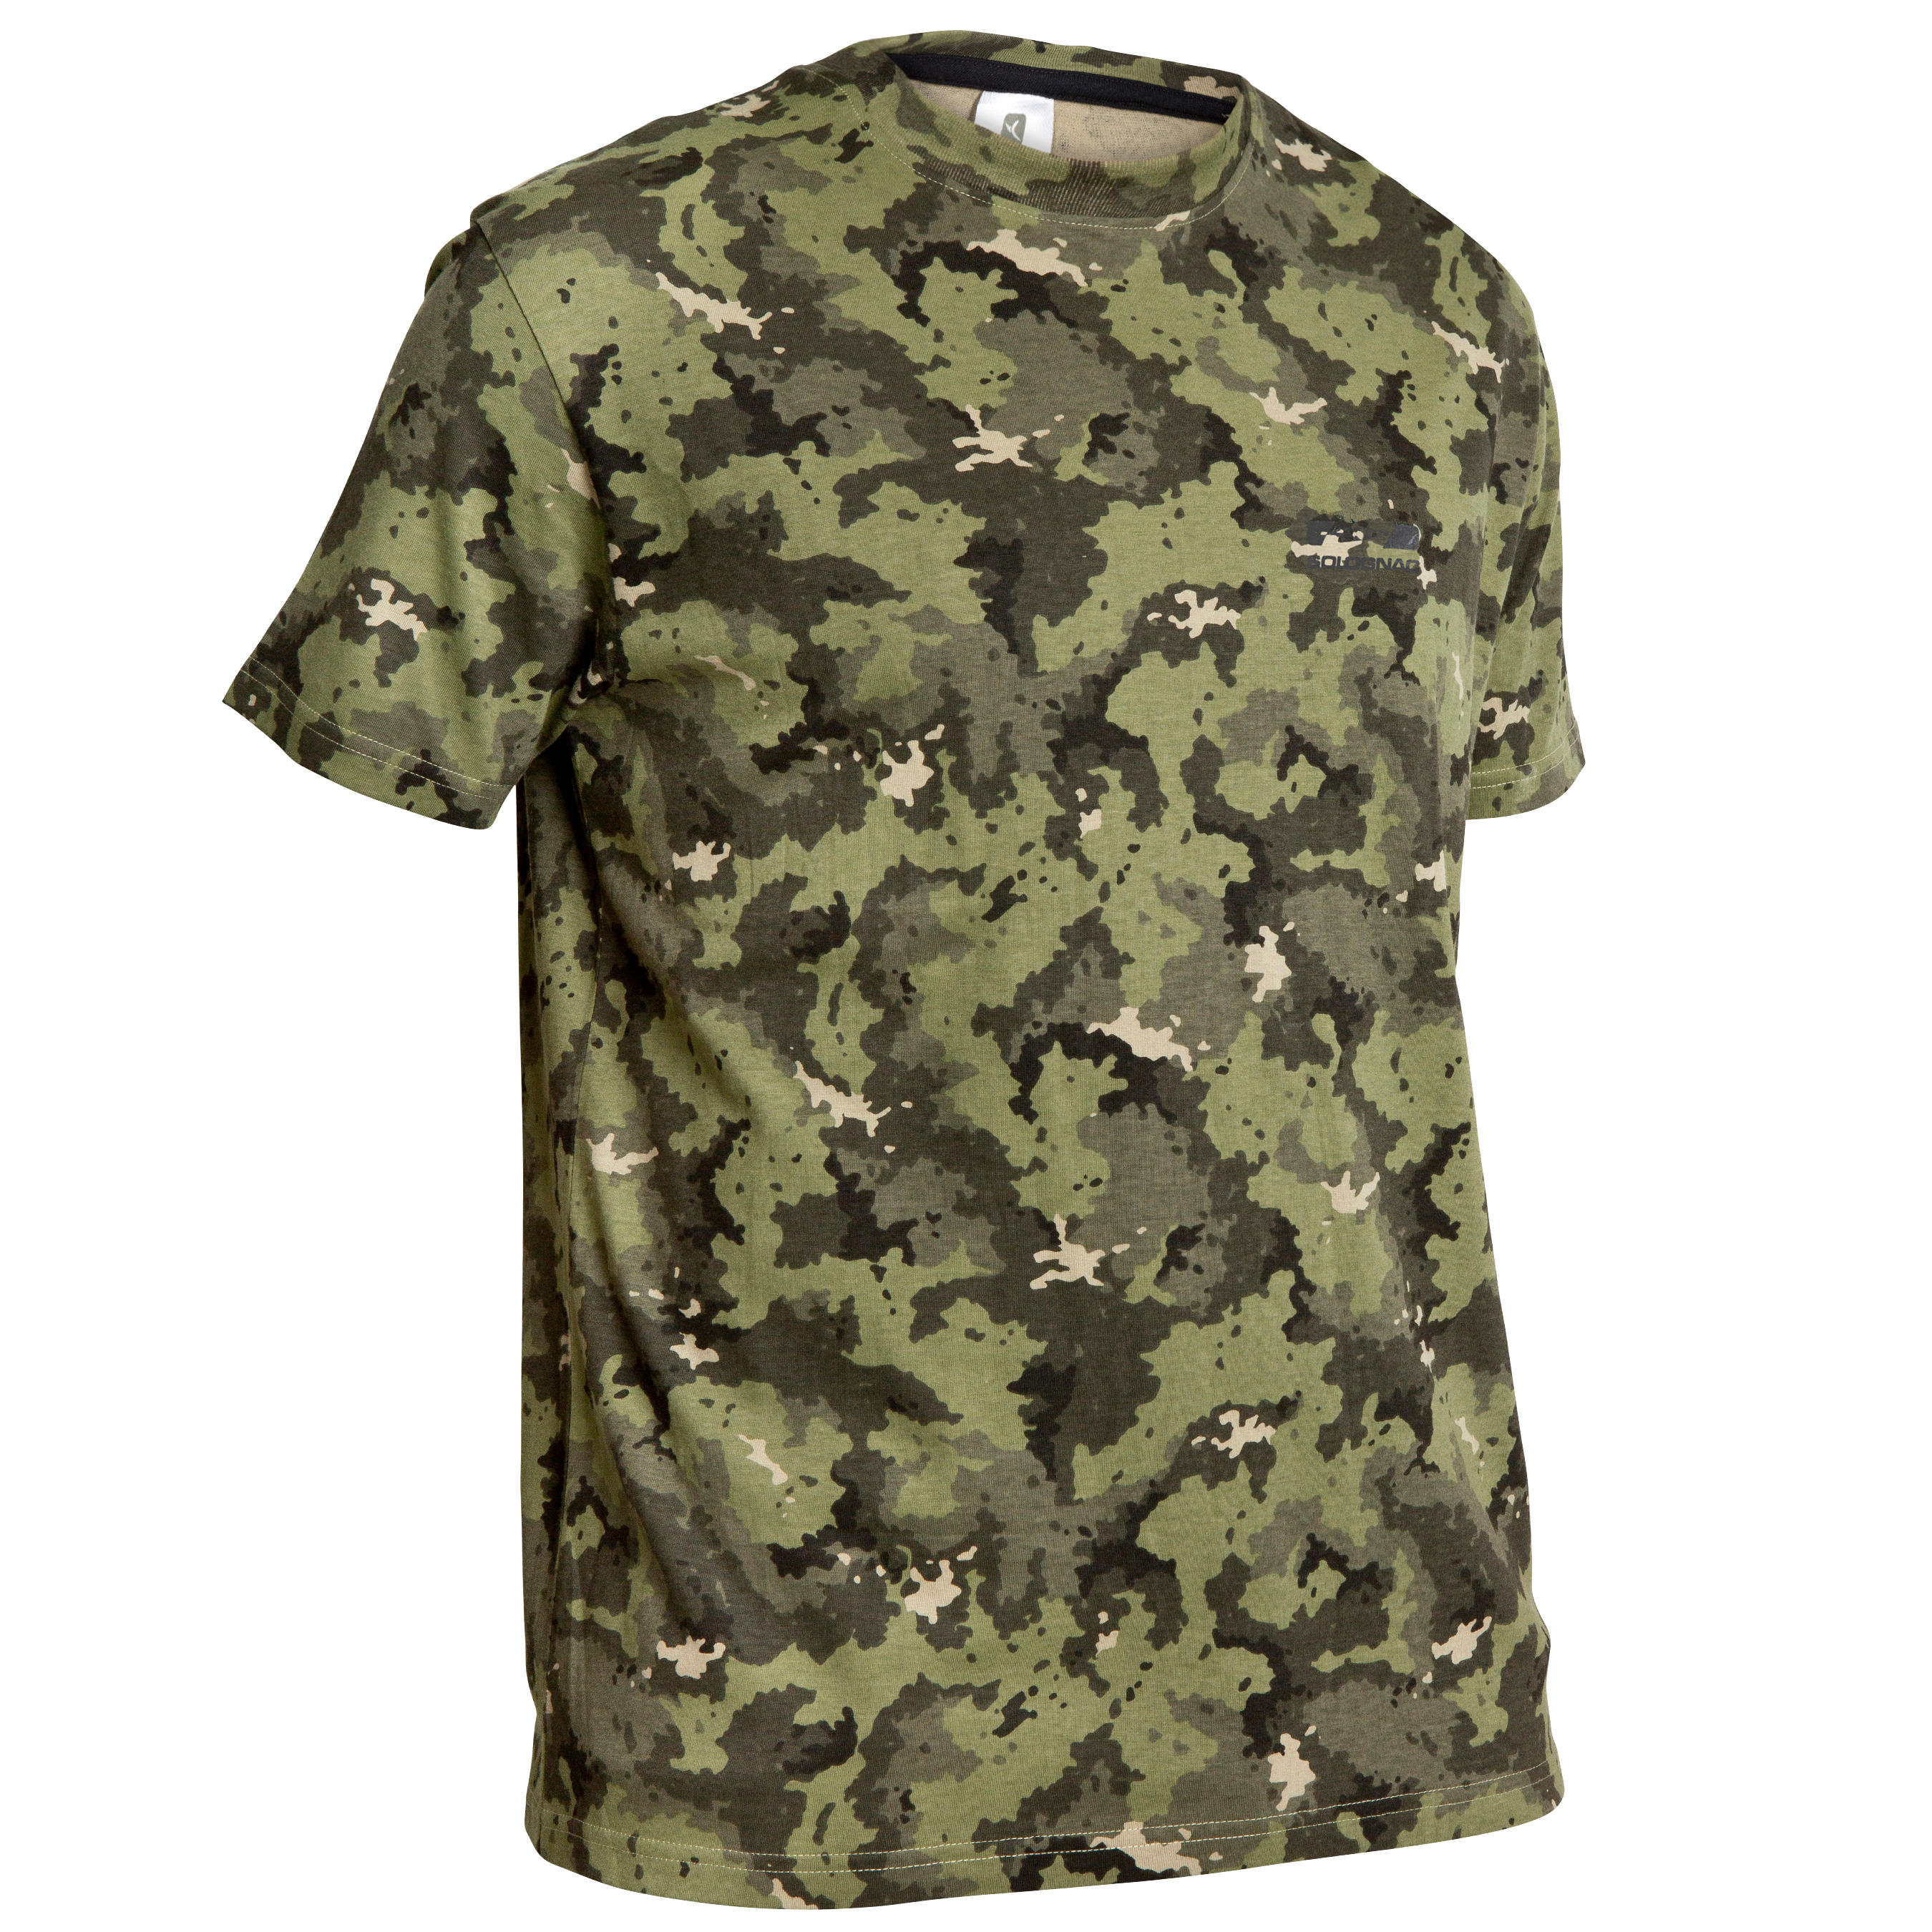 decathlon army t shirt